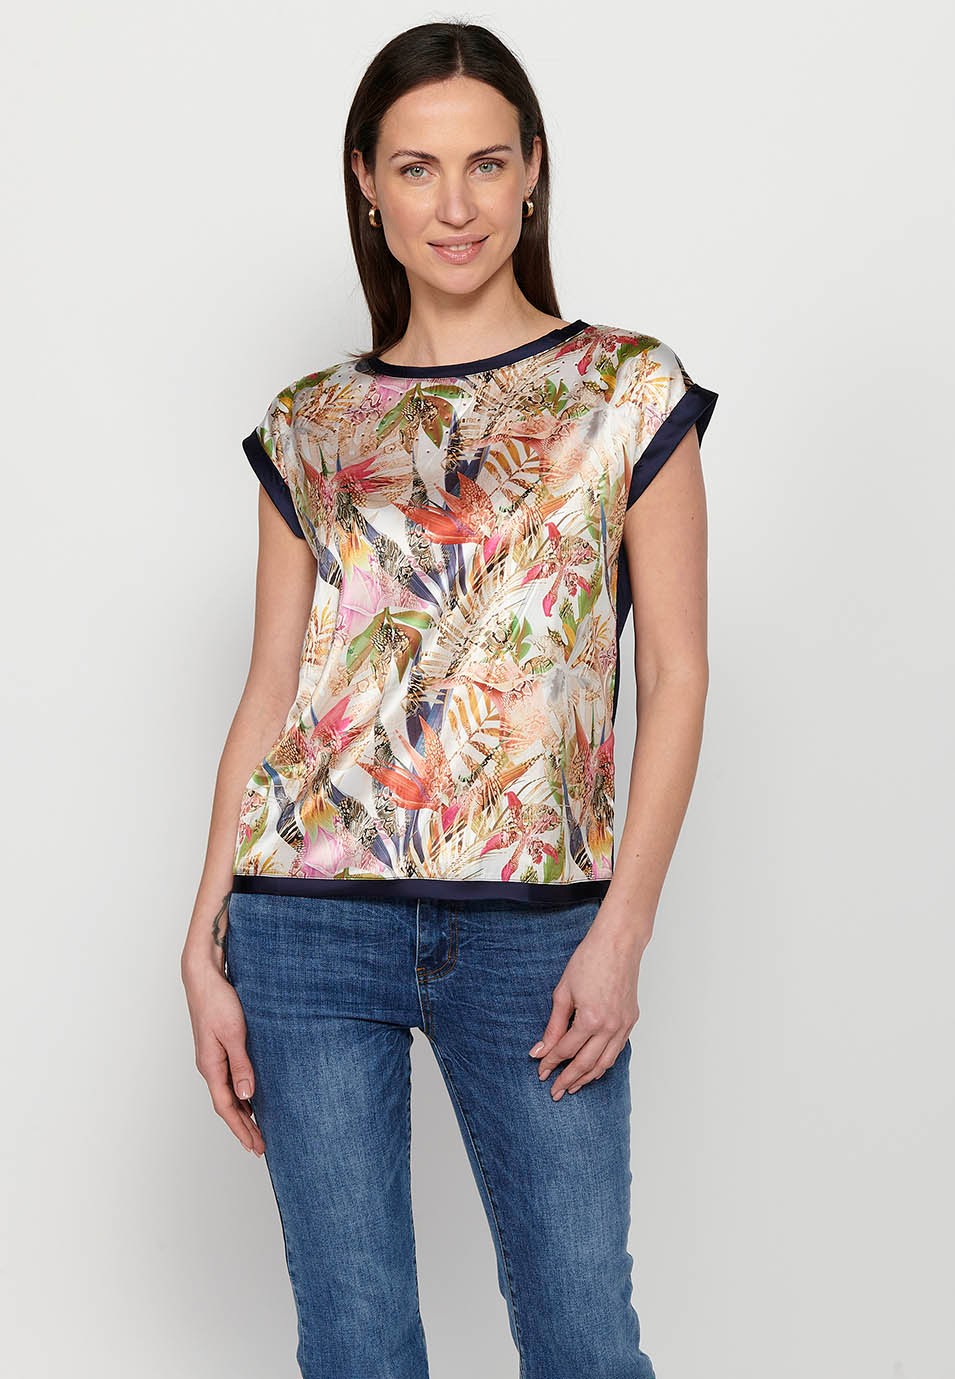 Samarreta de màniga curta, estampat davanter tropical multicolor per a dona